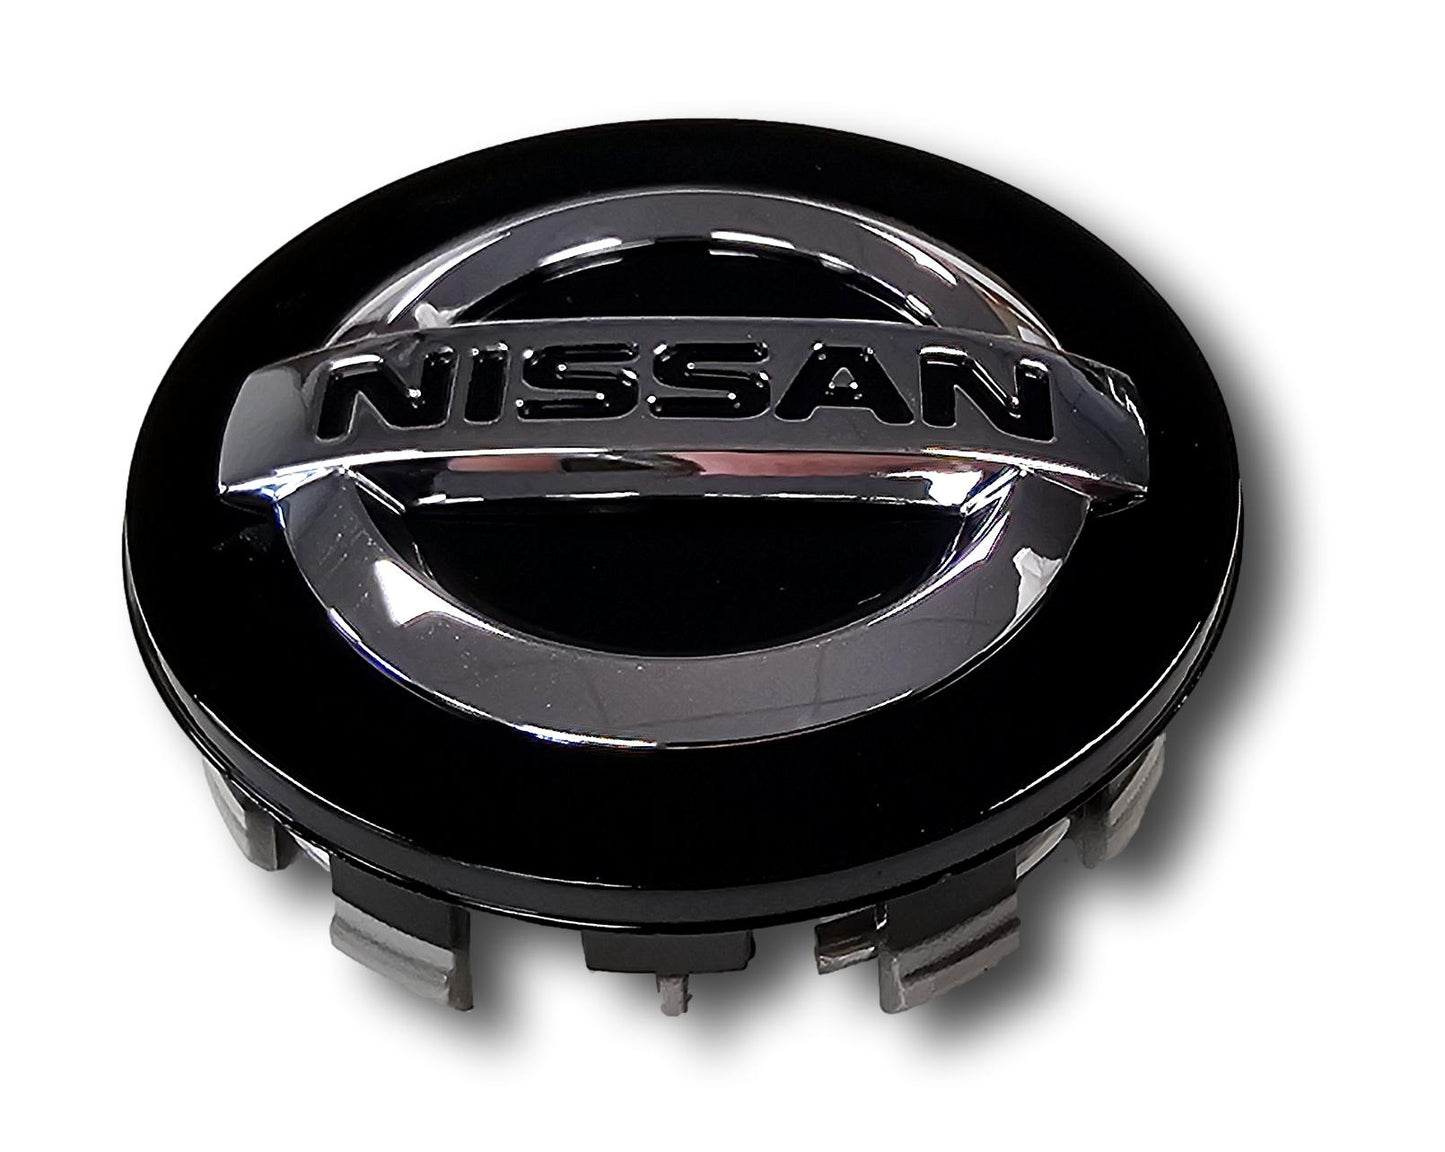 Tapa central de rueda Nissan Qashqai genuina nueva, color negro, juego de cuatro 40342 BR02A 2013&gt;21